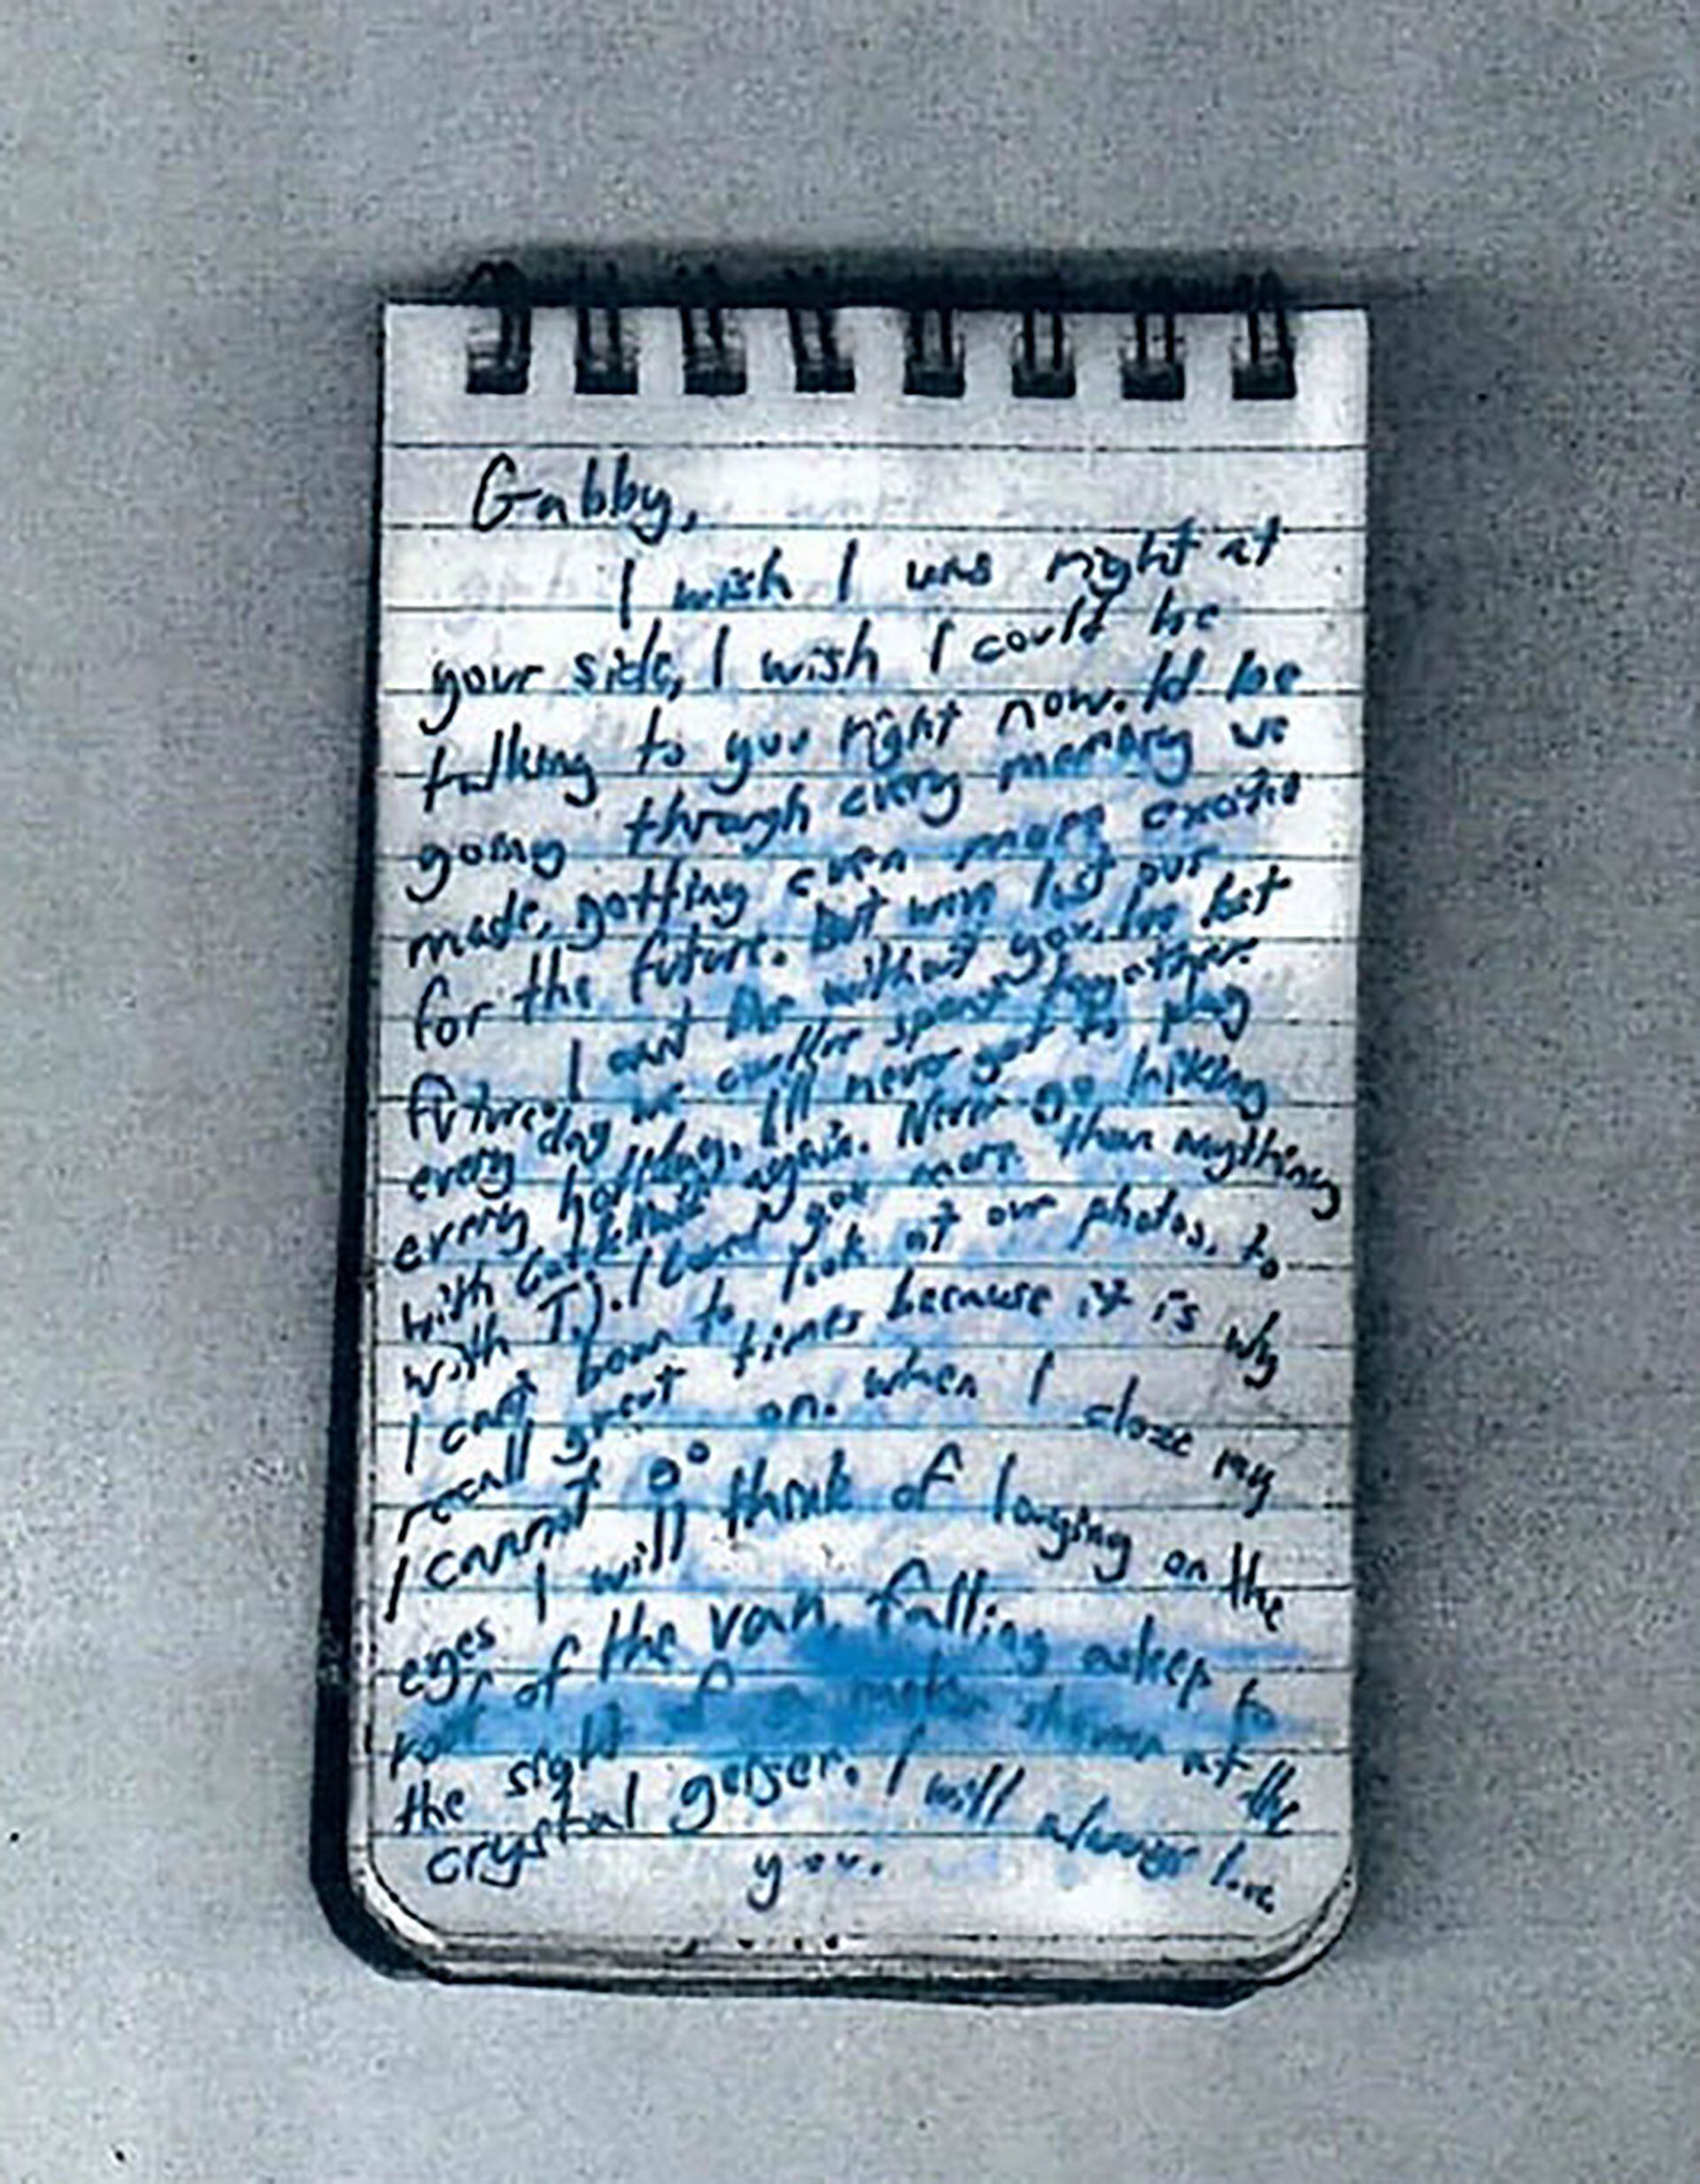 Brian Laundry confesó su crimen antes de morir. Lo escribió en su block de notas con tinta azul. Llenó con su letra ocho páginas